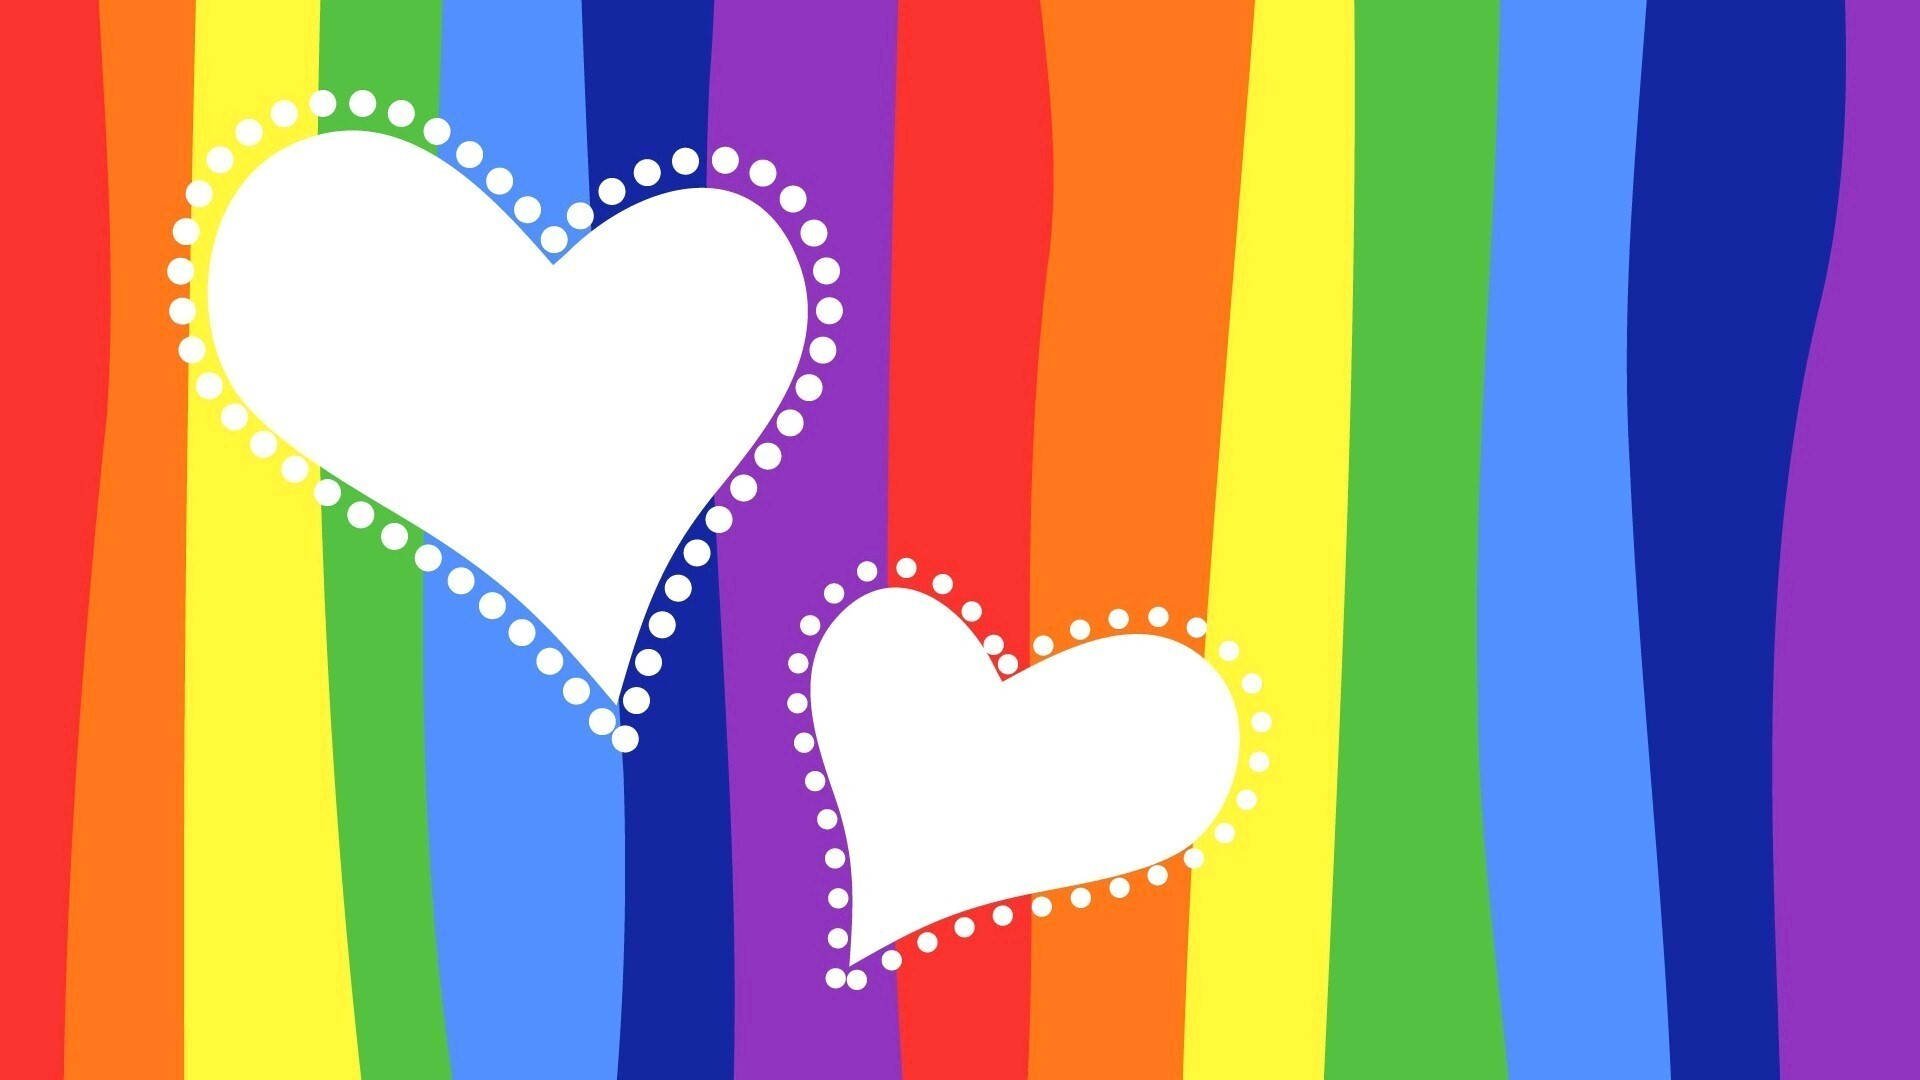 Y2k Hearts And Rainbow Wallpaper